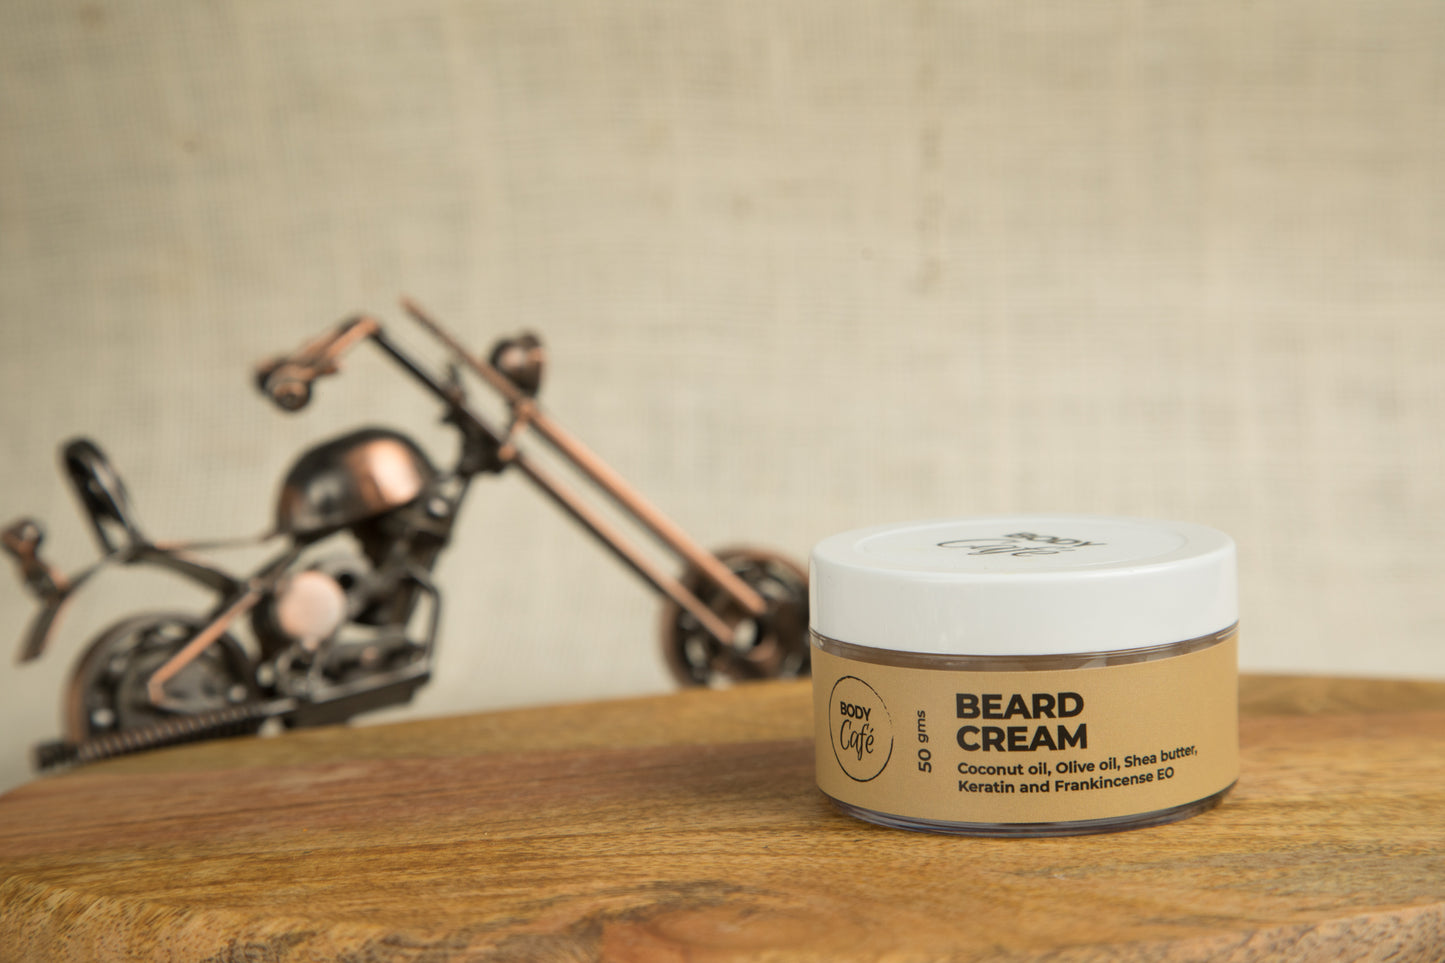 Bodycafe Beard Cream (50gm)